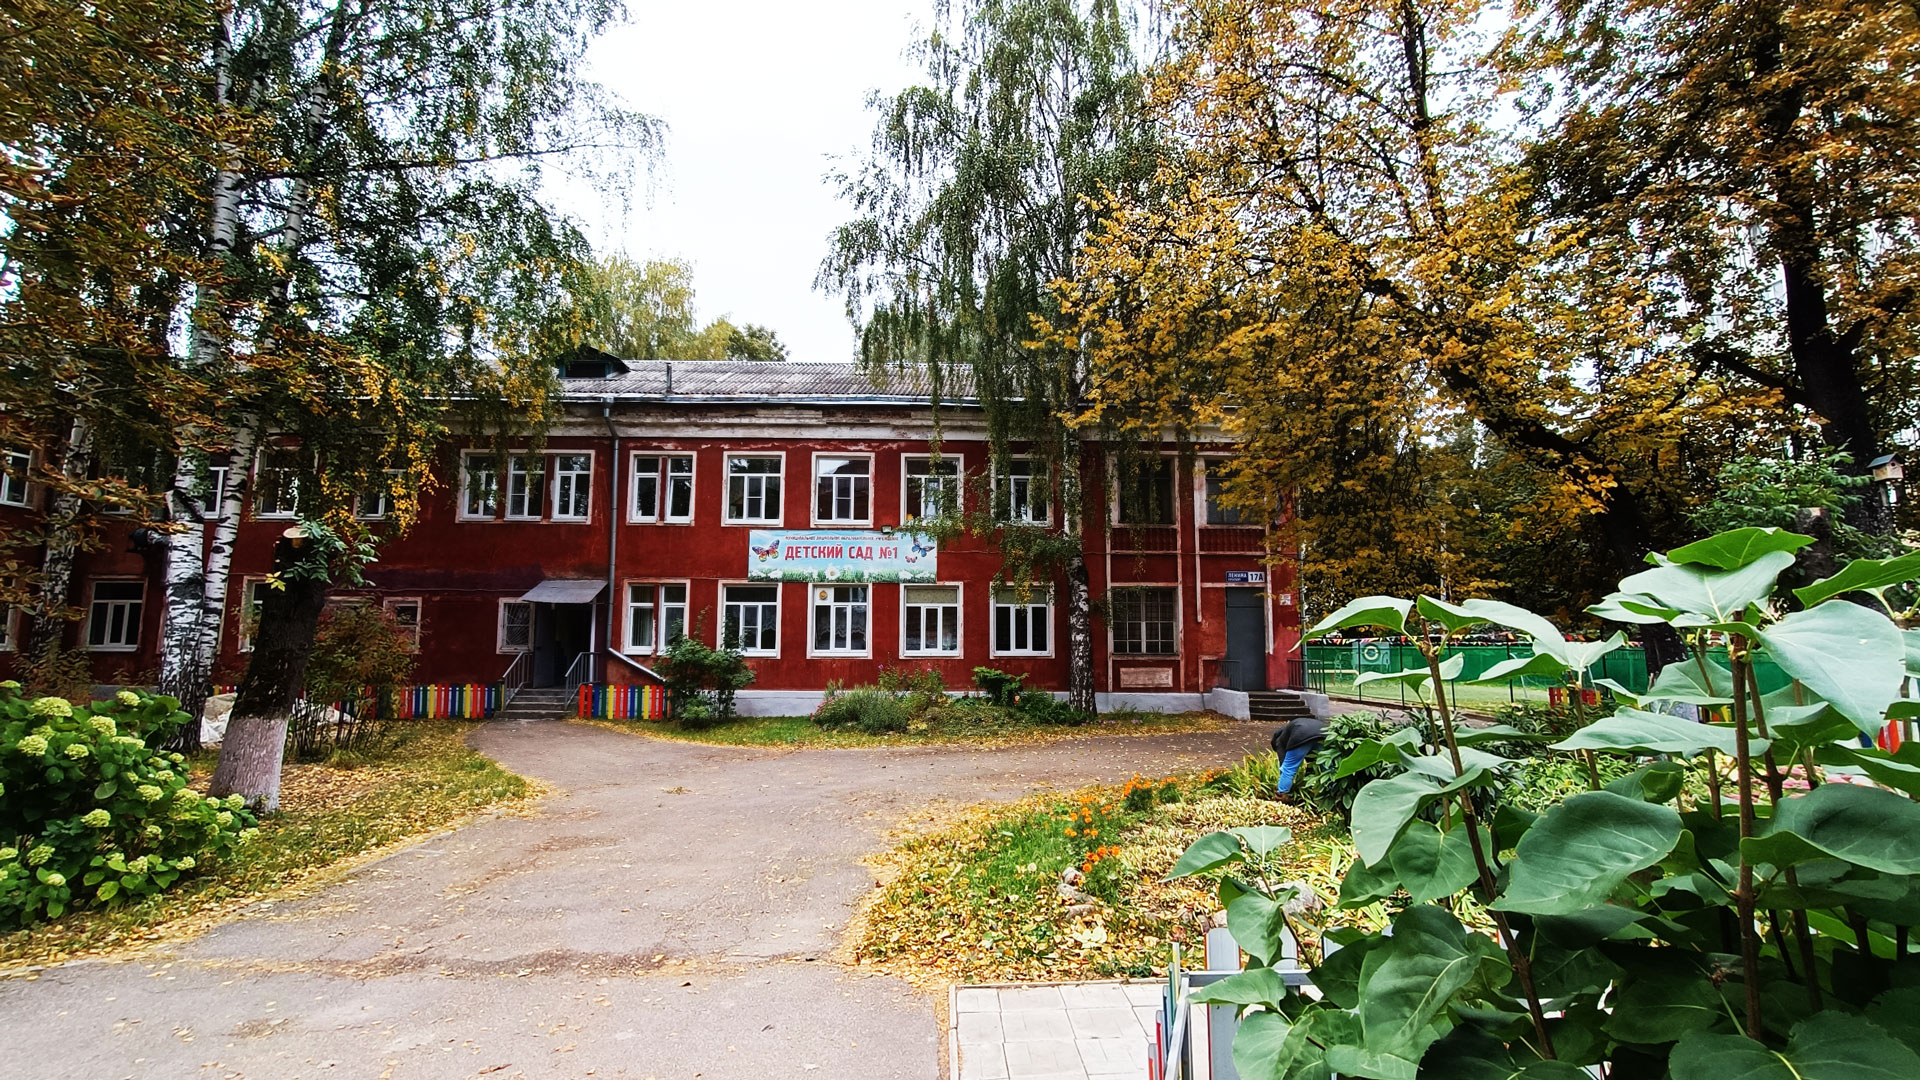 Детский сад 1 Ярославль: главный вход в здание садика.